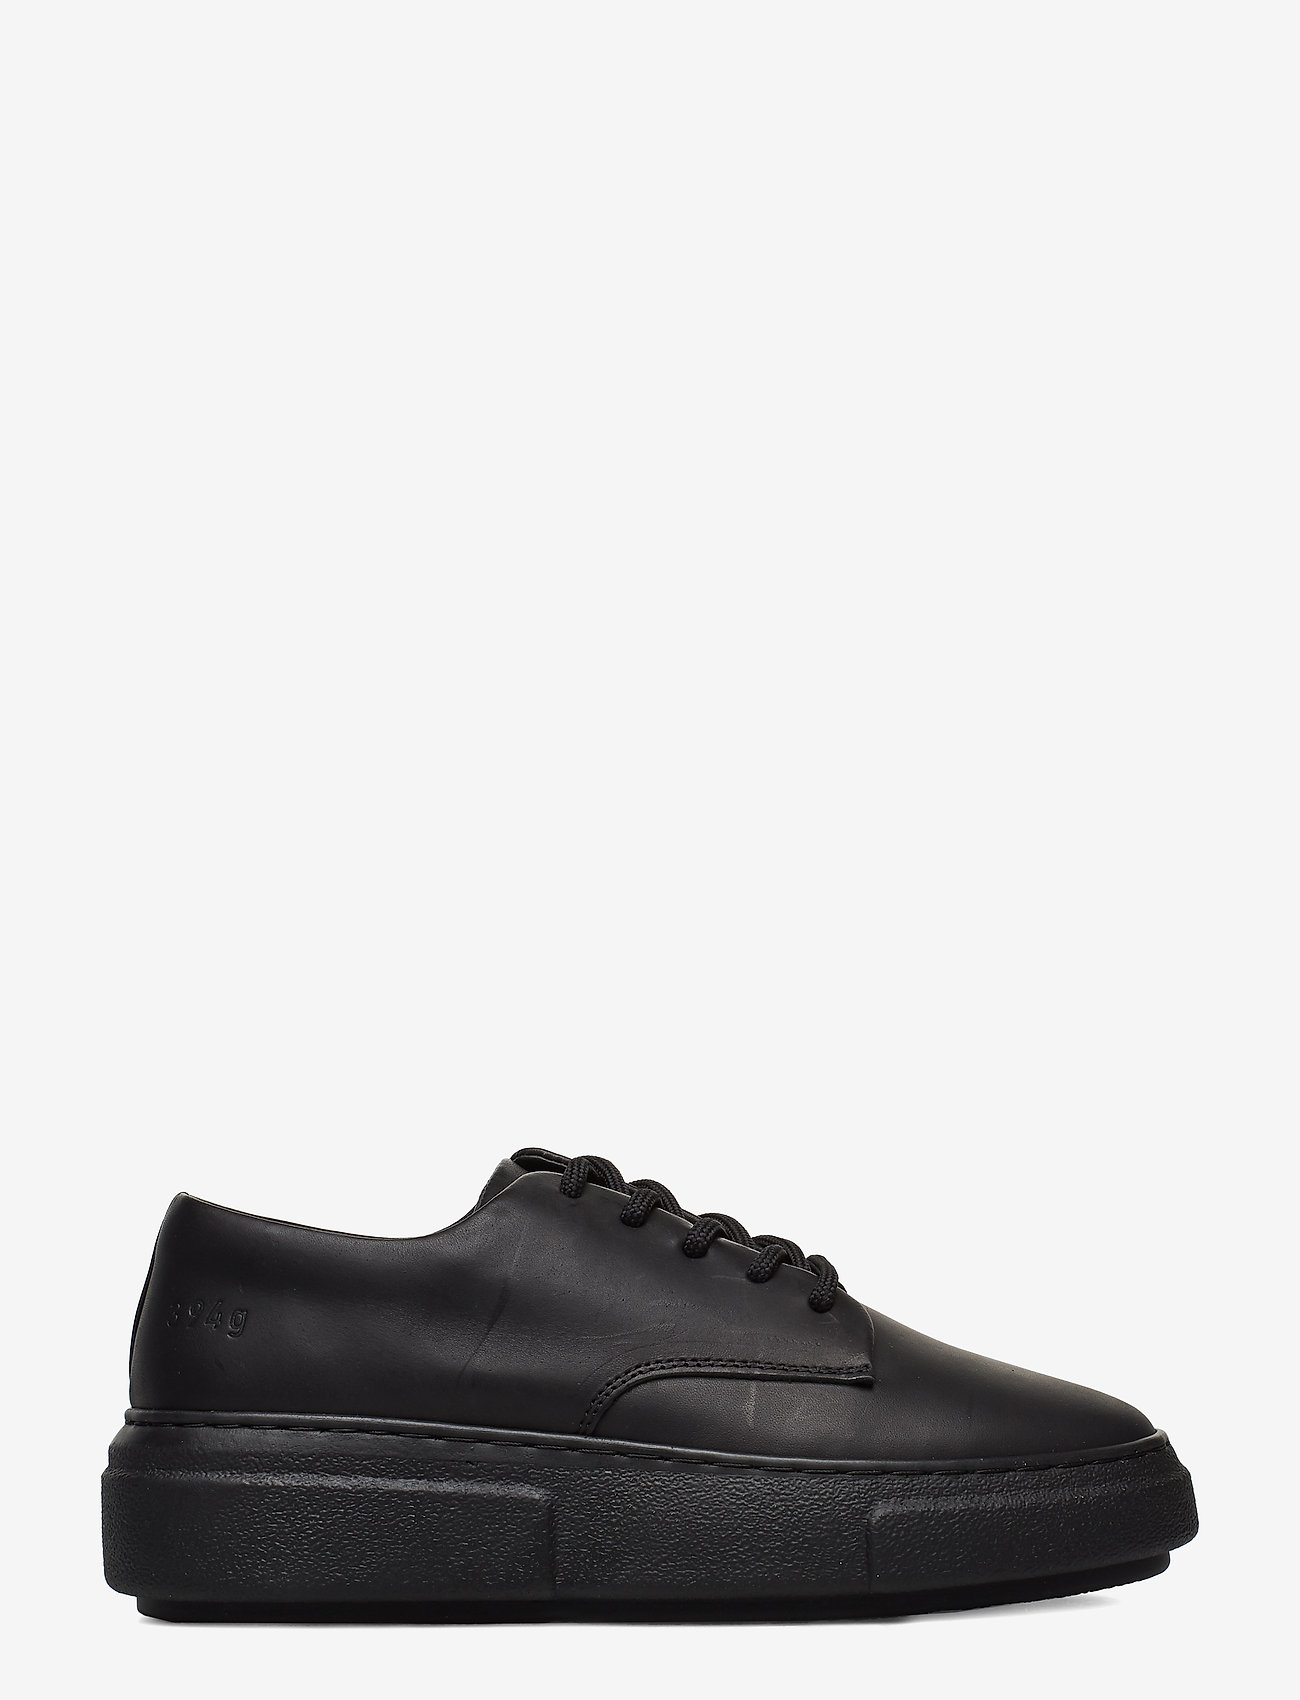 Gram - 394g black leather - low top sneakers - black - 1